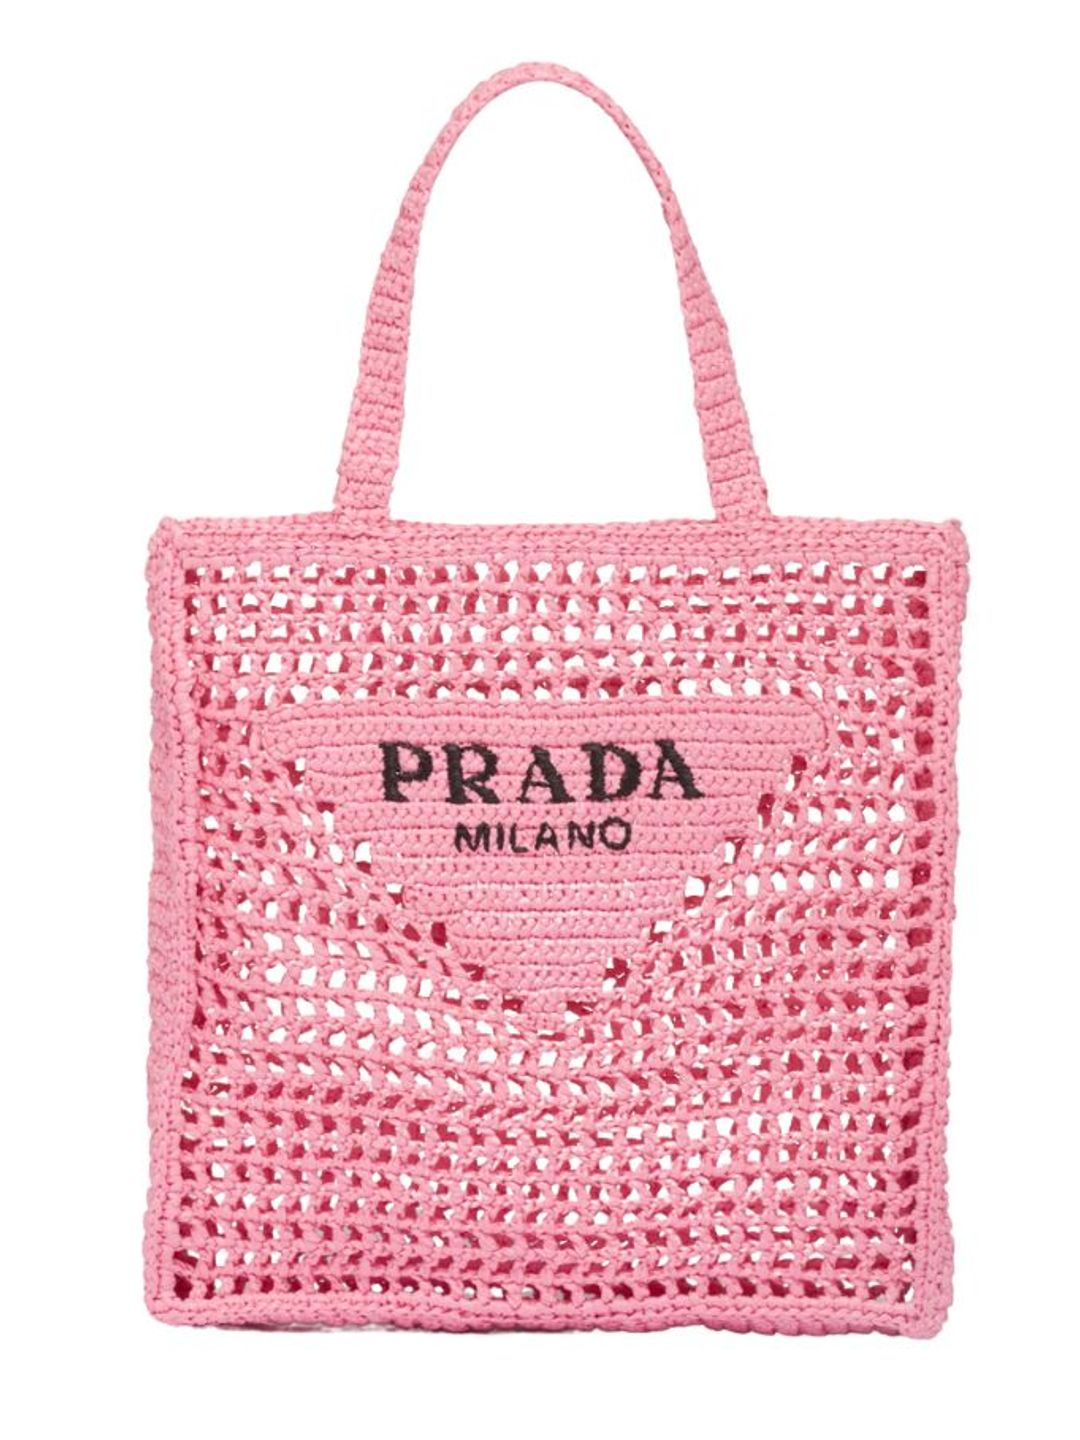 Prada pink crochet tote bag 